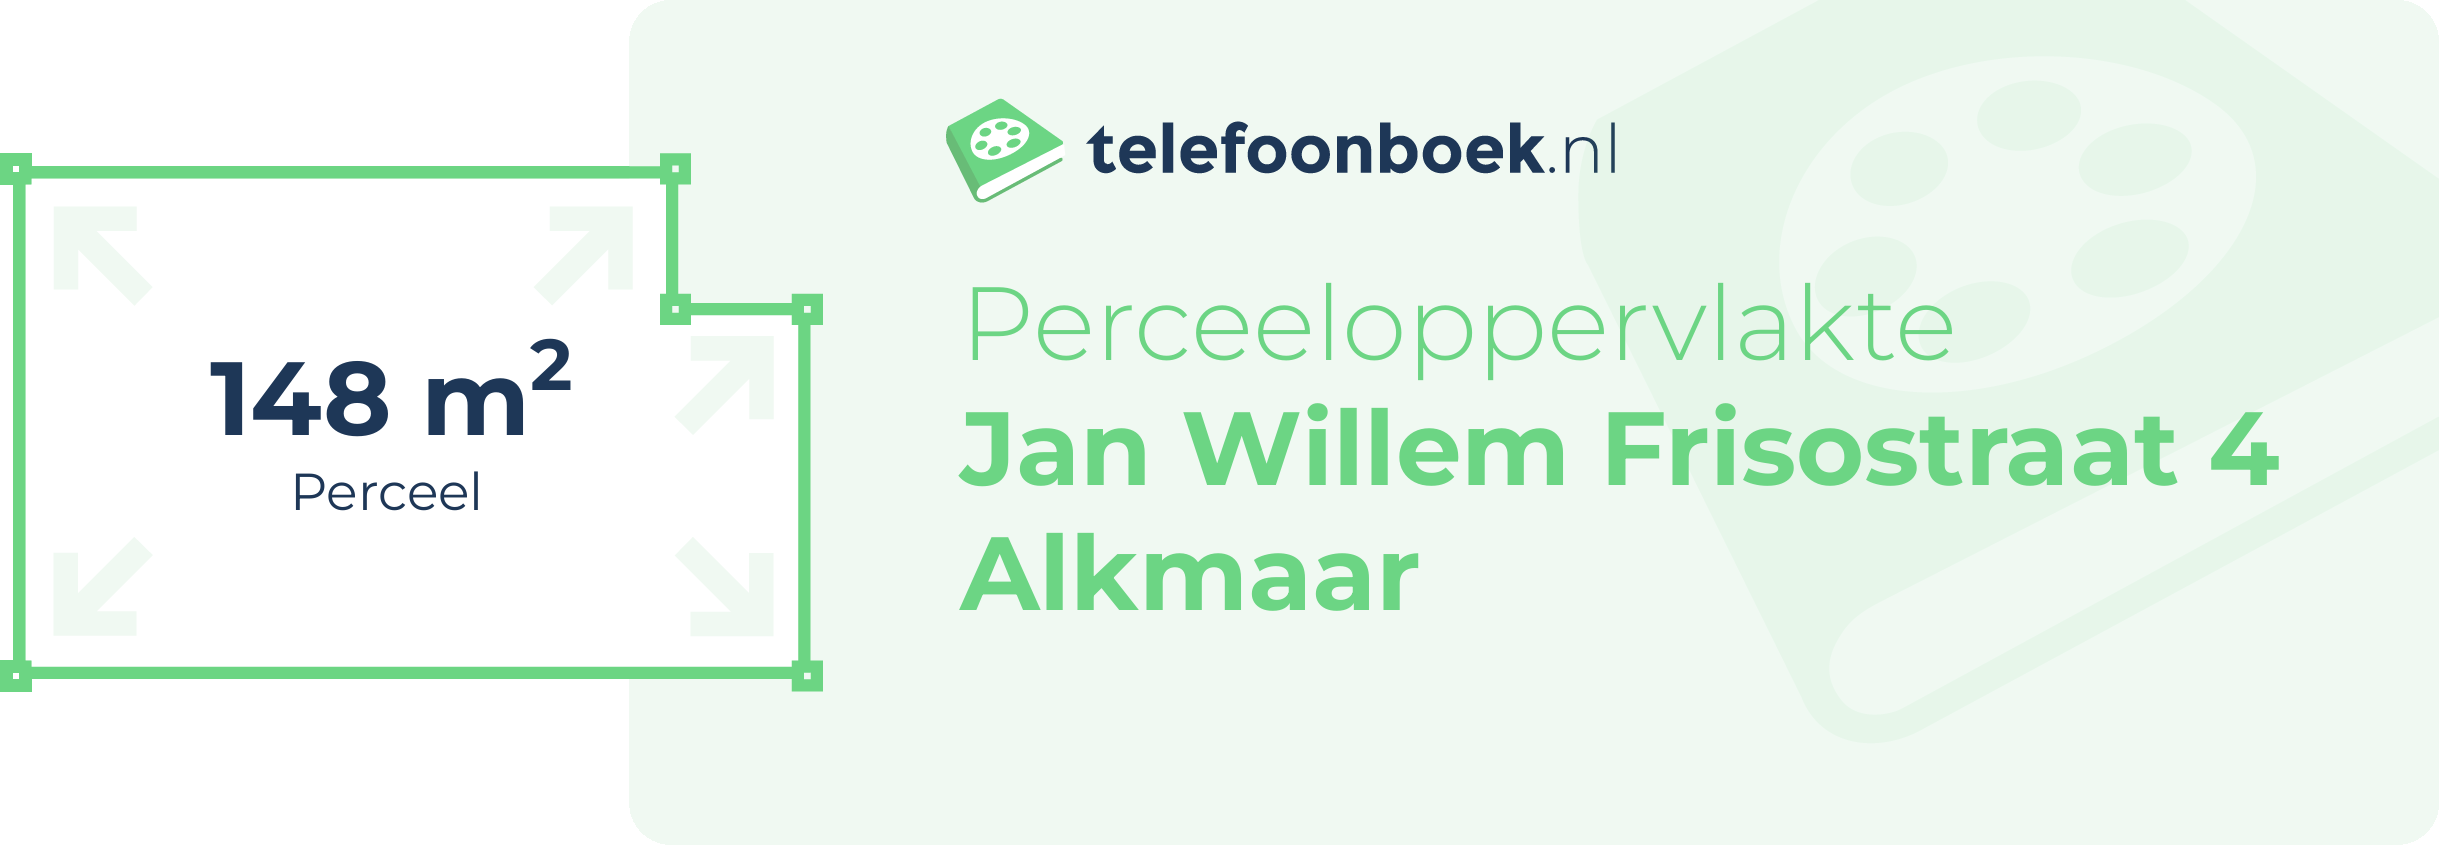 Perceeloppervlakte Jan Willem Frisostraat 4 Alkmaar